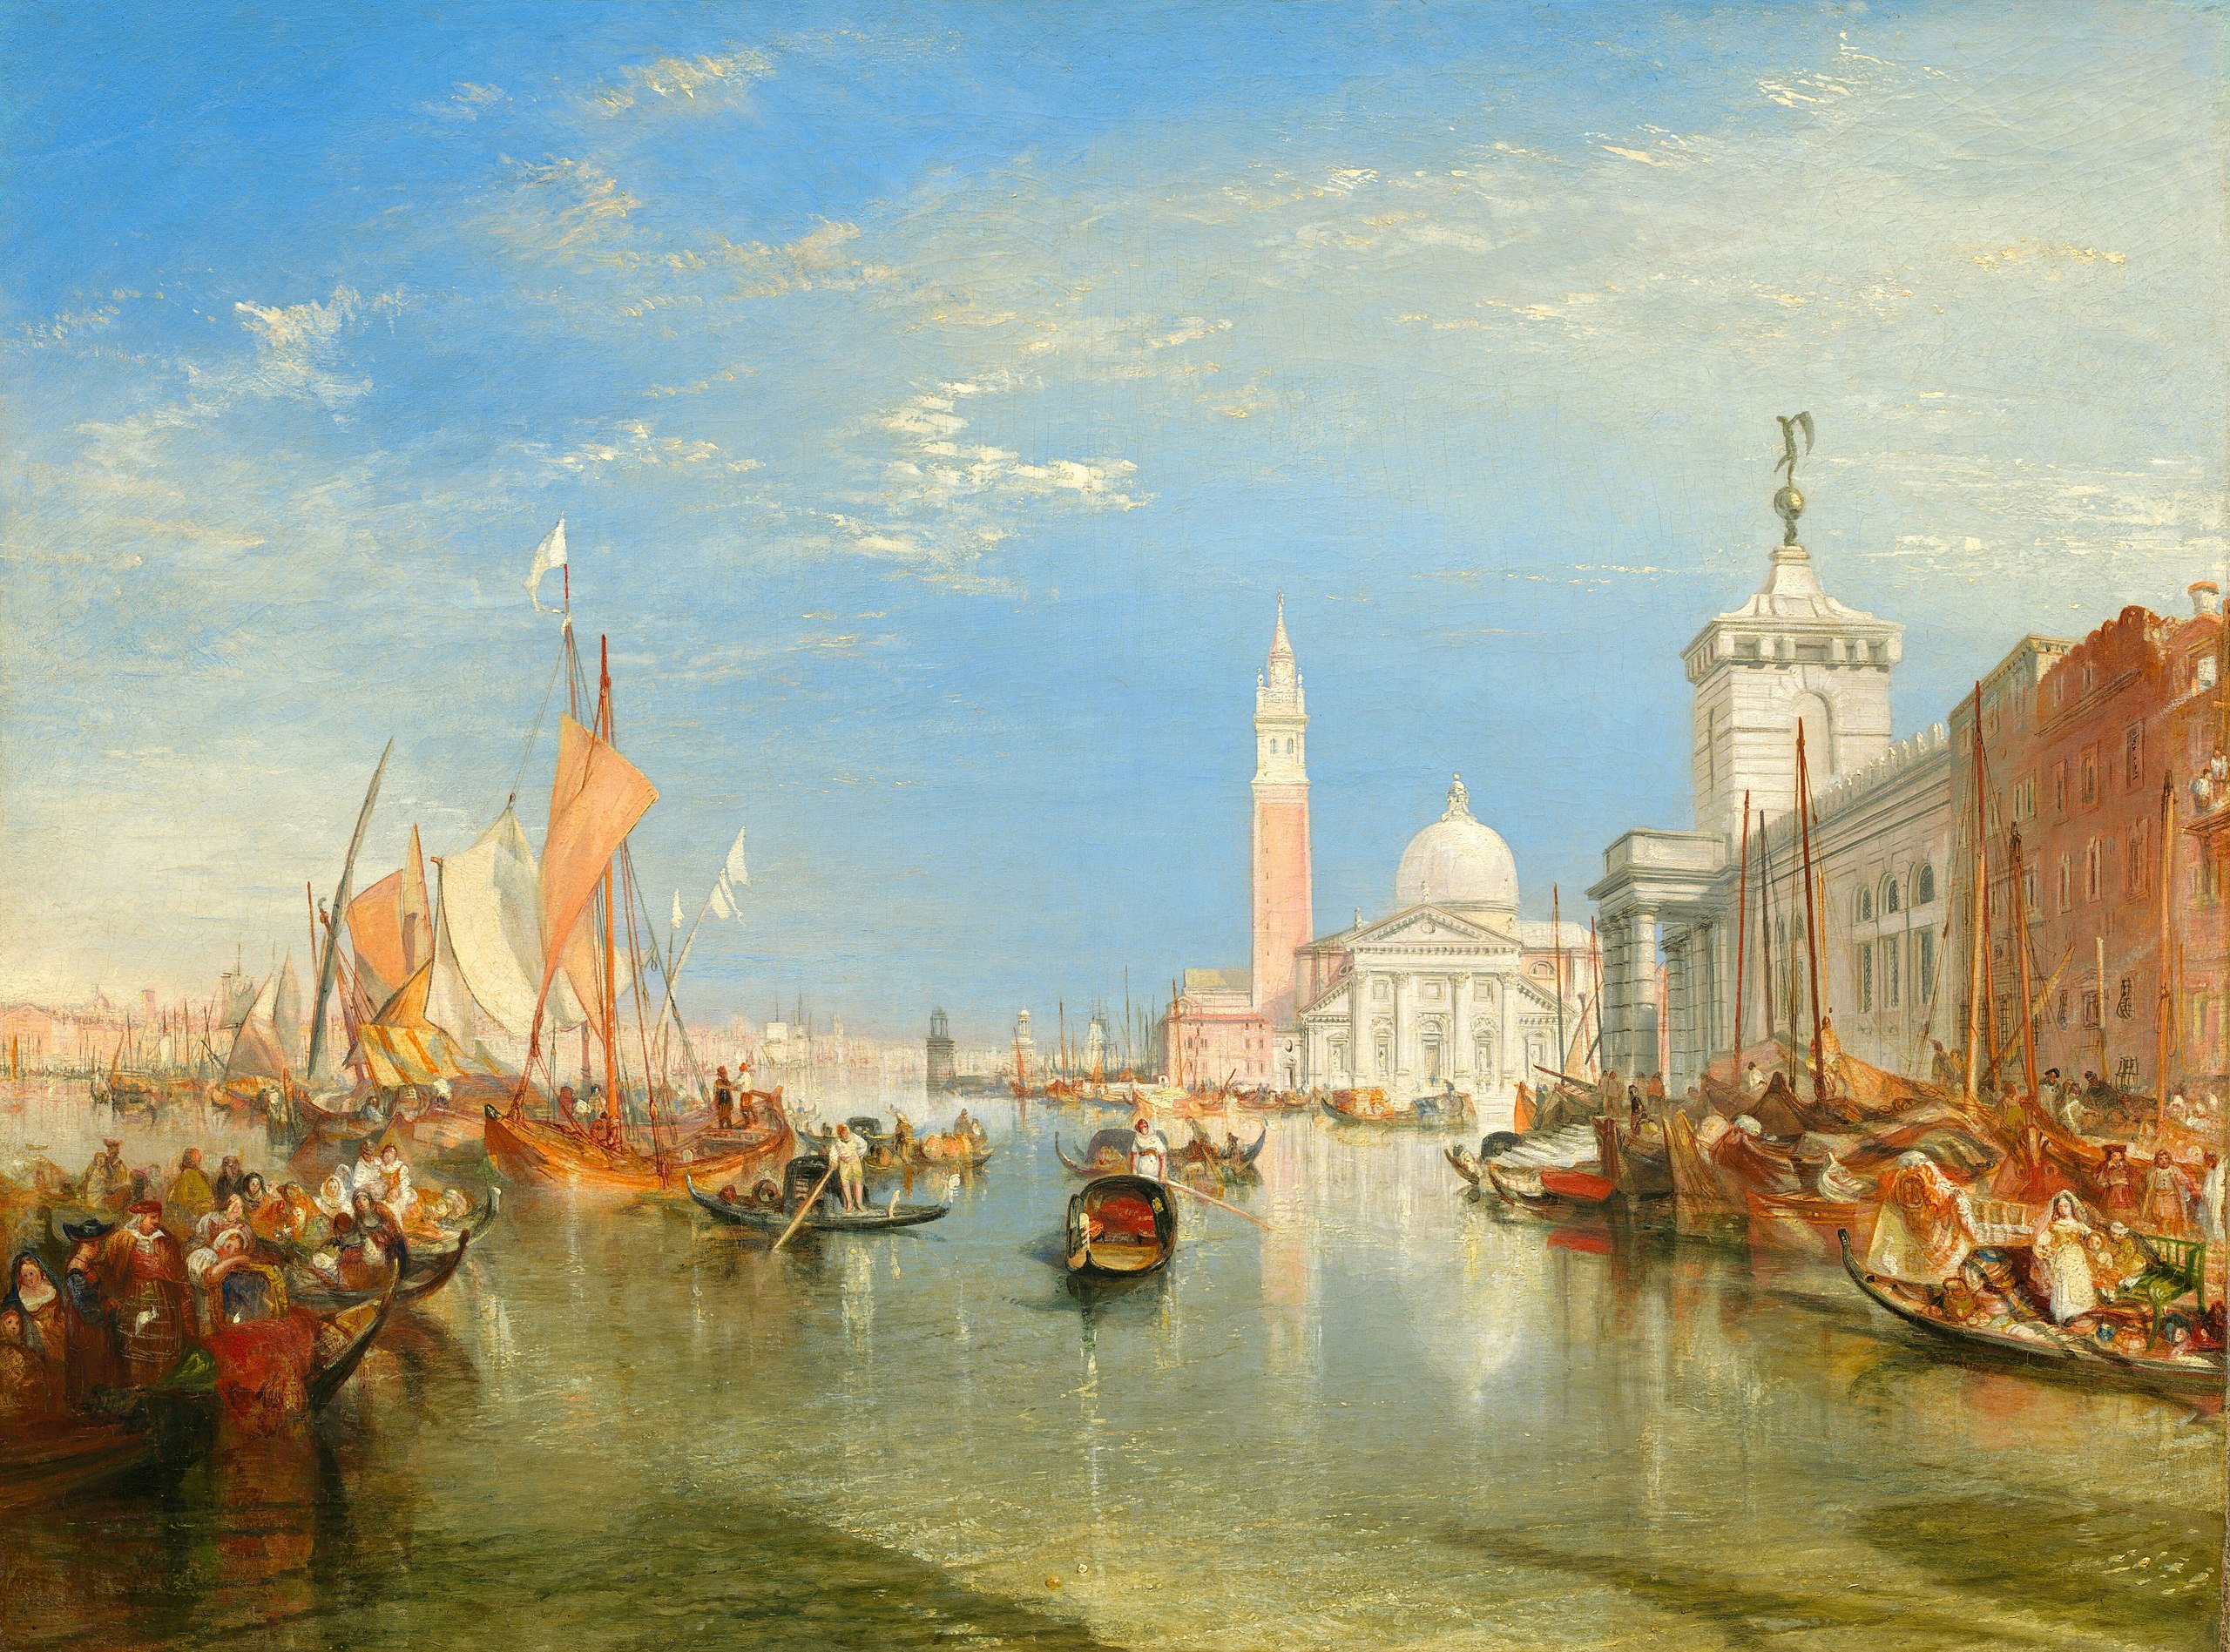 Wenecja: Dogana da Mar i San Giorgio Maggiore by Joseph Mallord William Turner - 1834 - 91,5 x 122 cm 